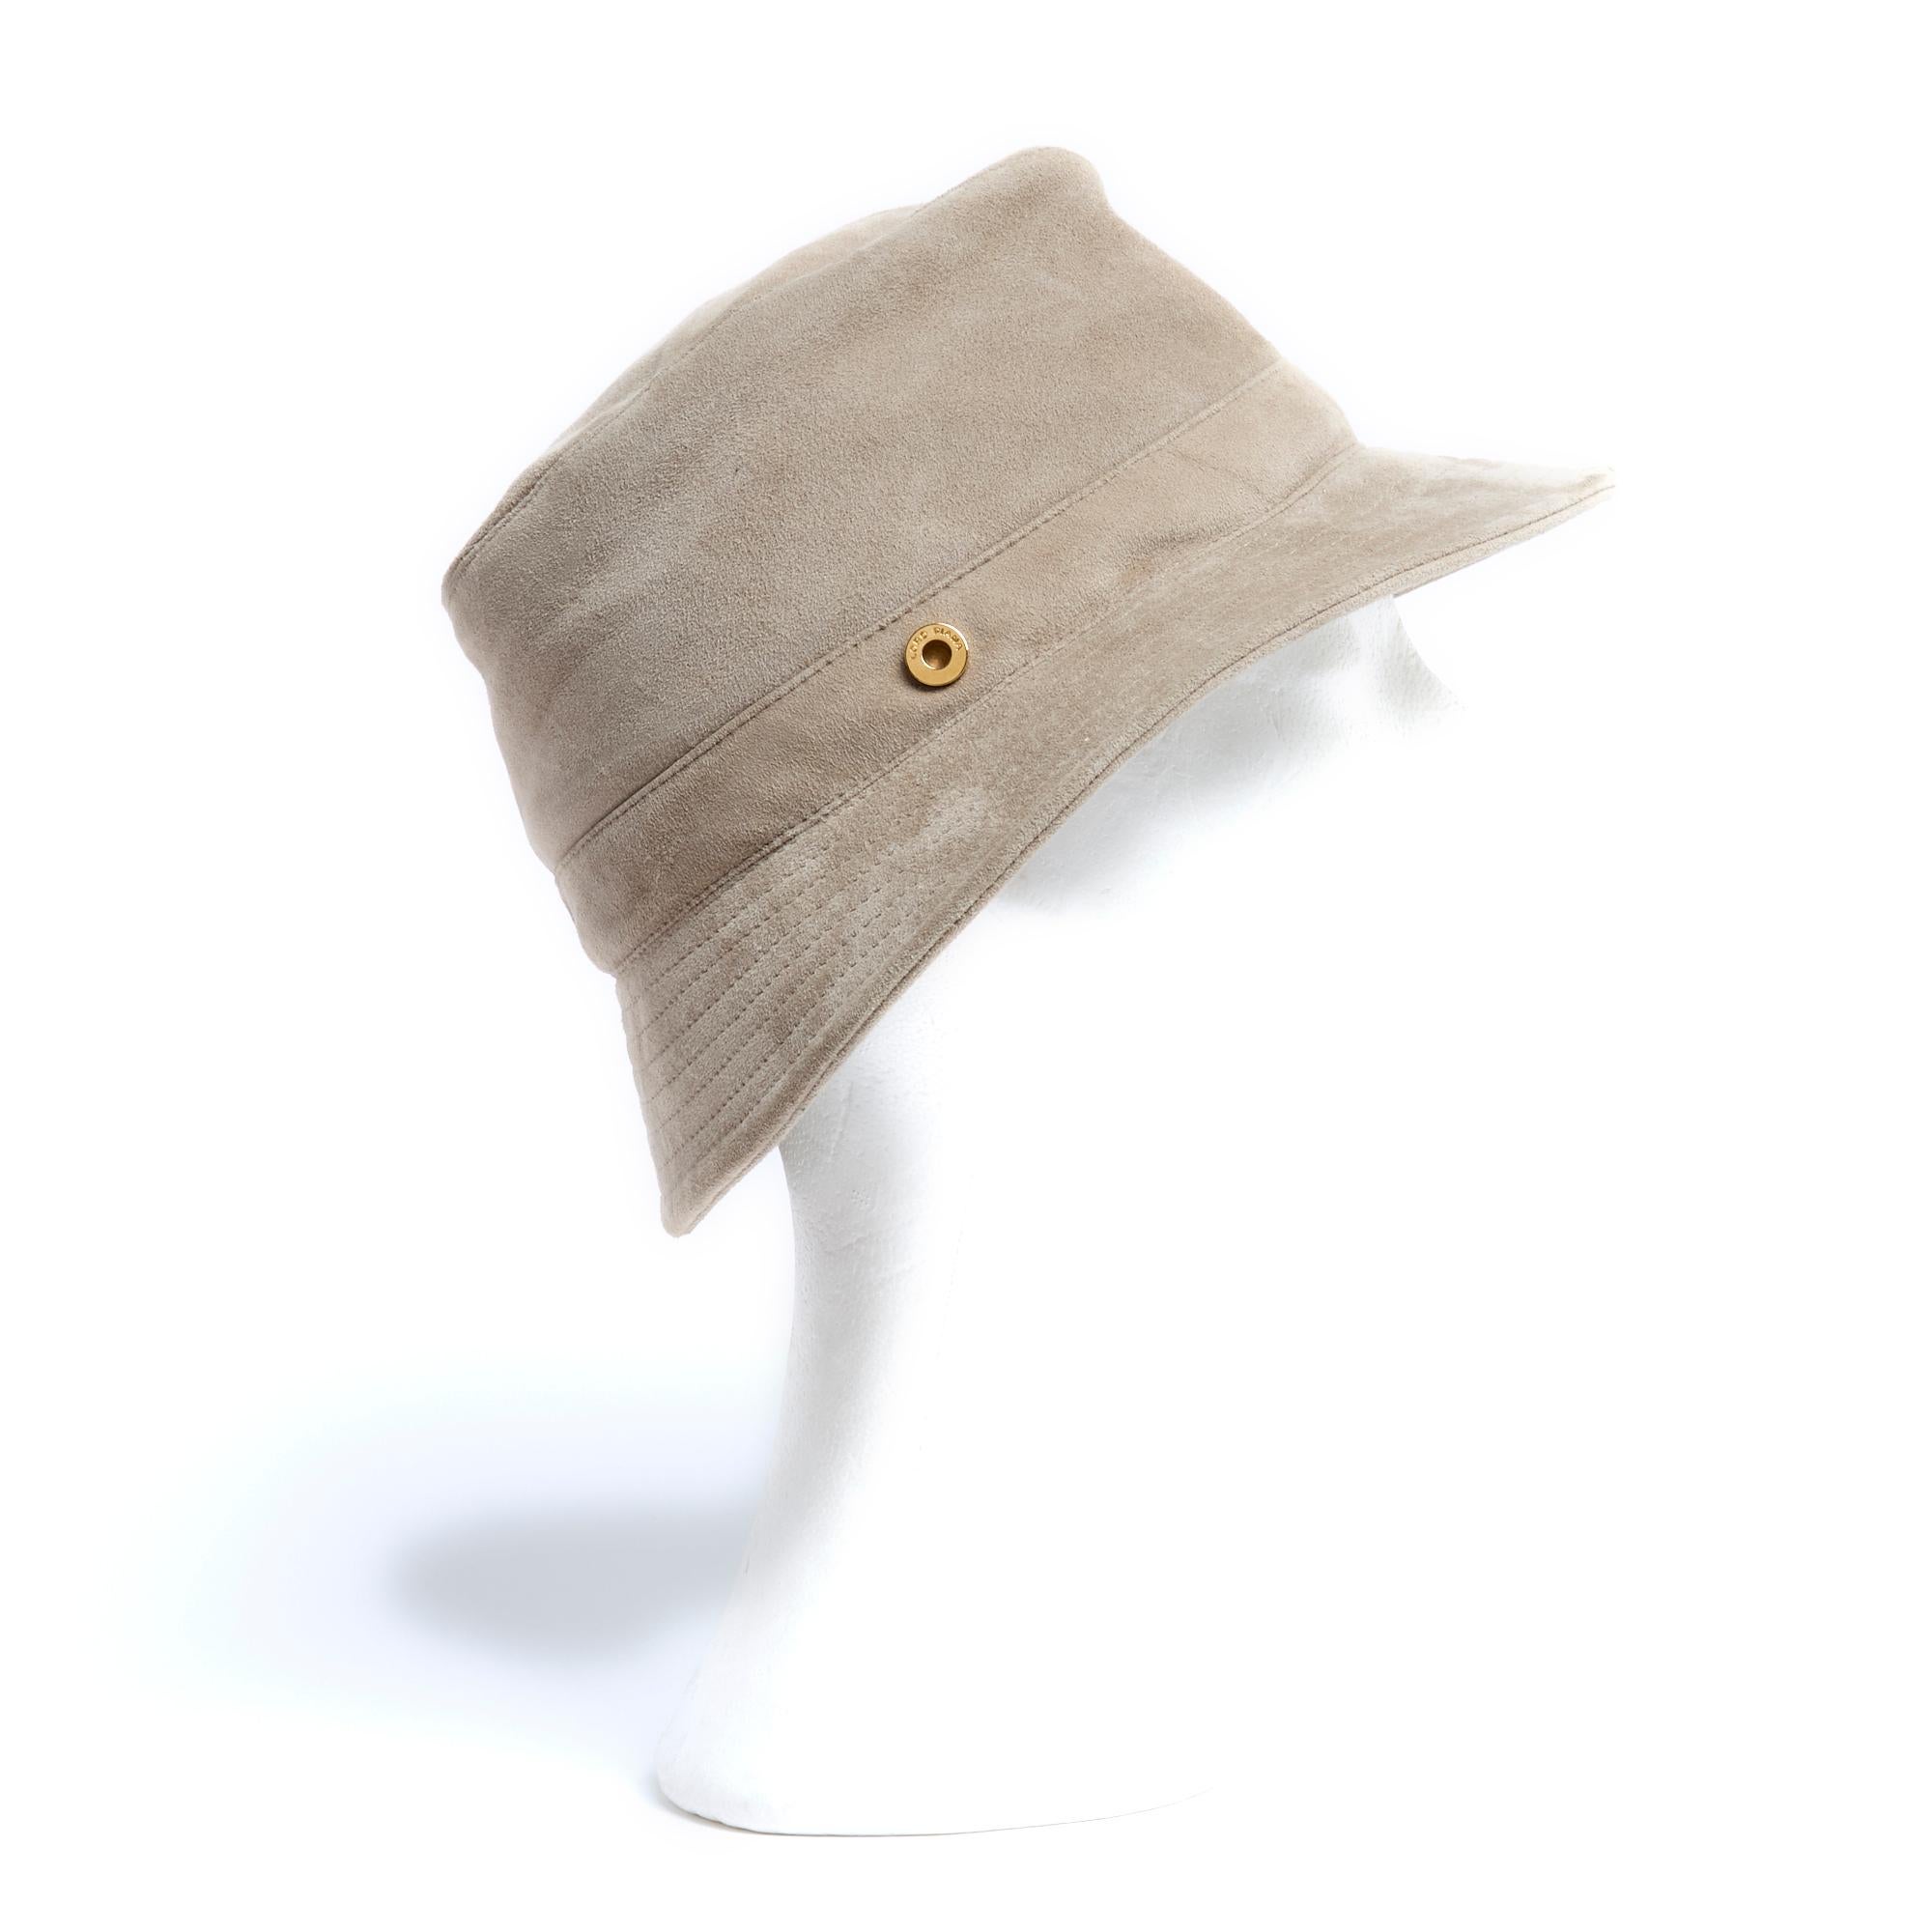 Loro Piana Schiebermütze aus grau-beigem Wildleder mit abgesteppten Rändern, Futter aus satiniertem Canvas. Größe M, ca. 56 cm Kopfumfang. Der Hut wurde getragen, ist aber in sehr gutem Zustand, perfekt für sonnige Tage.